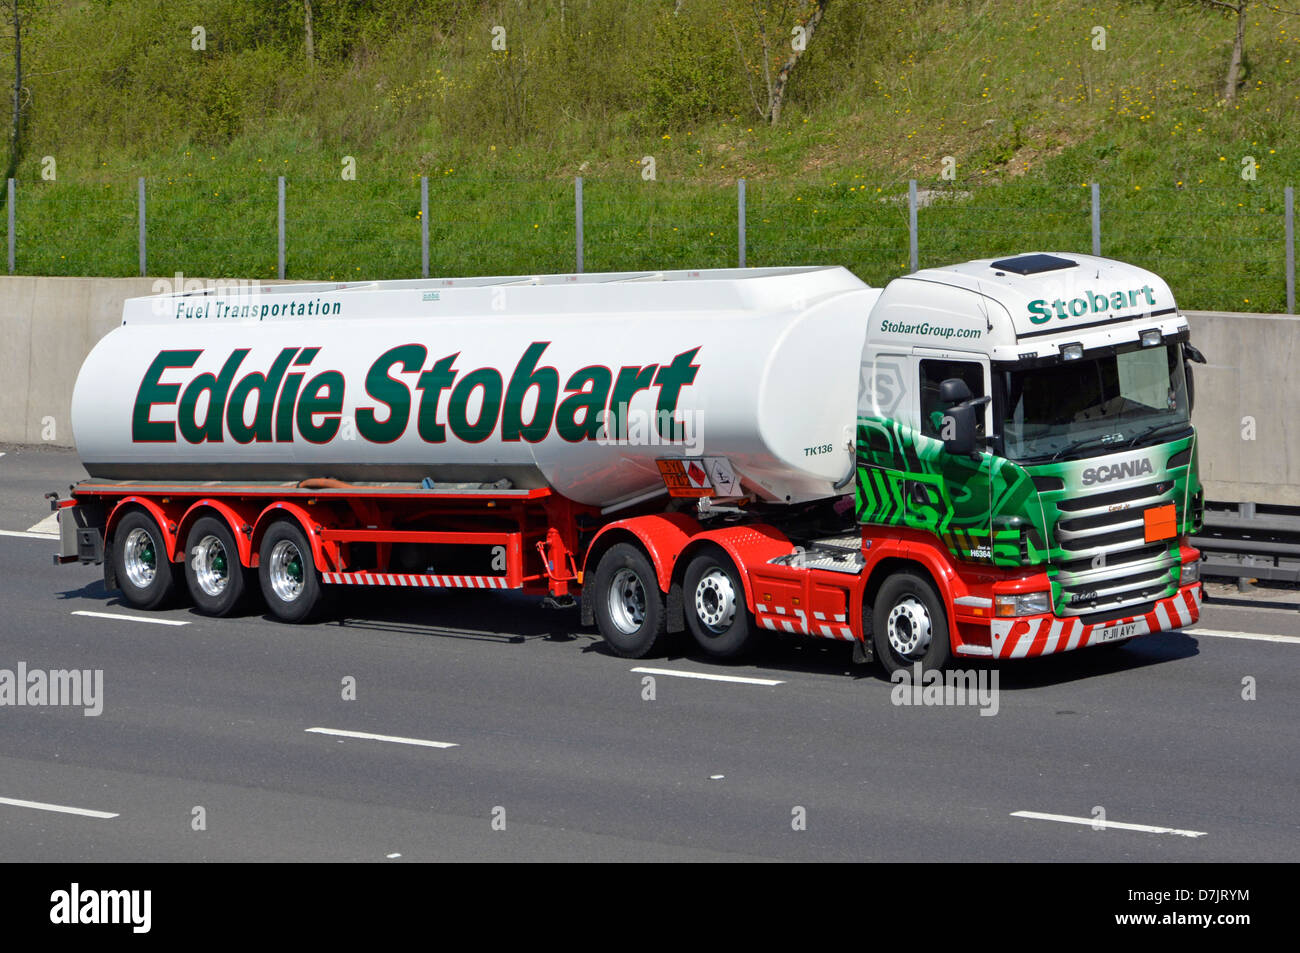 Eddie Stobart remorque articulée et camion-moteur hgv Scania sur l'autoroute orbitale M25 de Londres, Essex, Angleterre, Royaume-Uni Banque D'Images